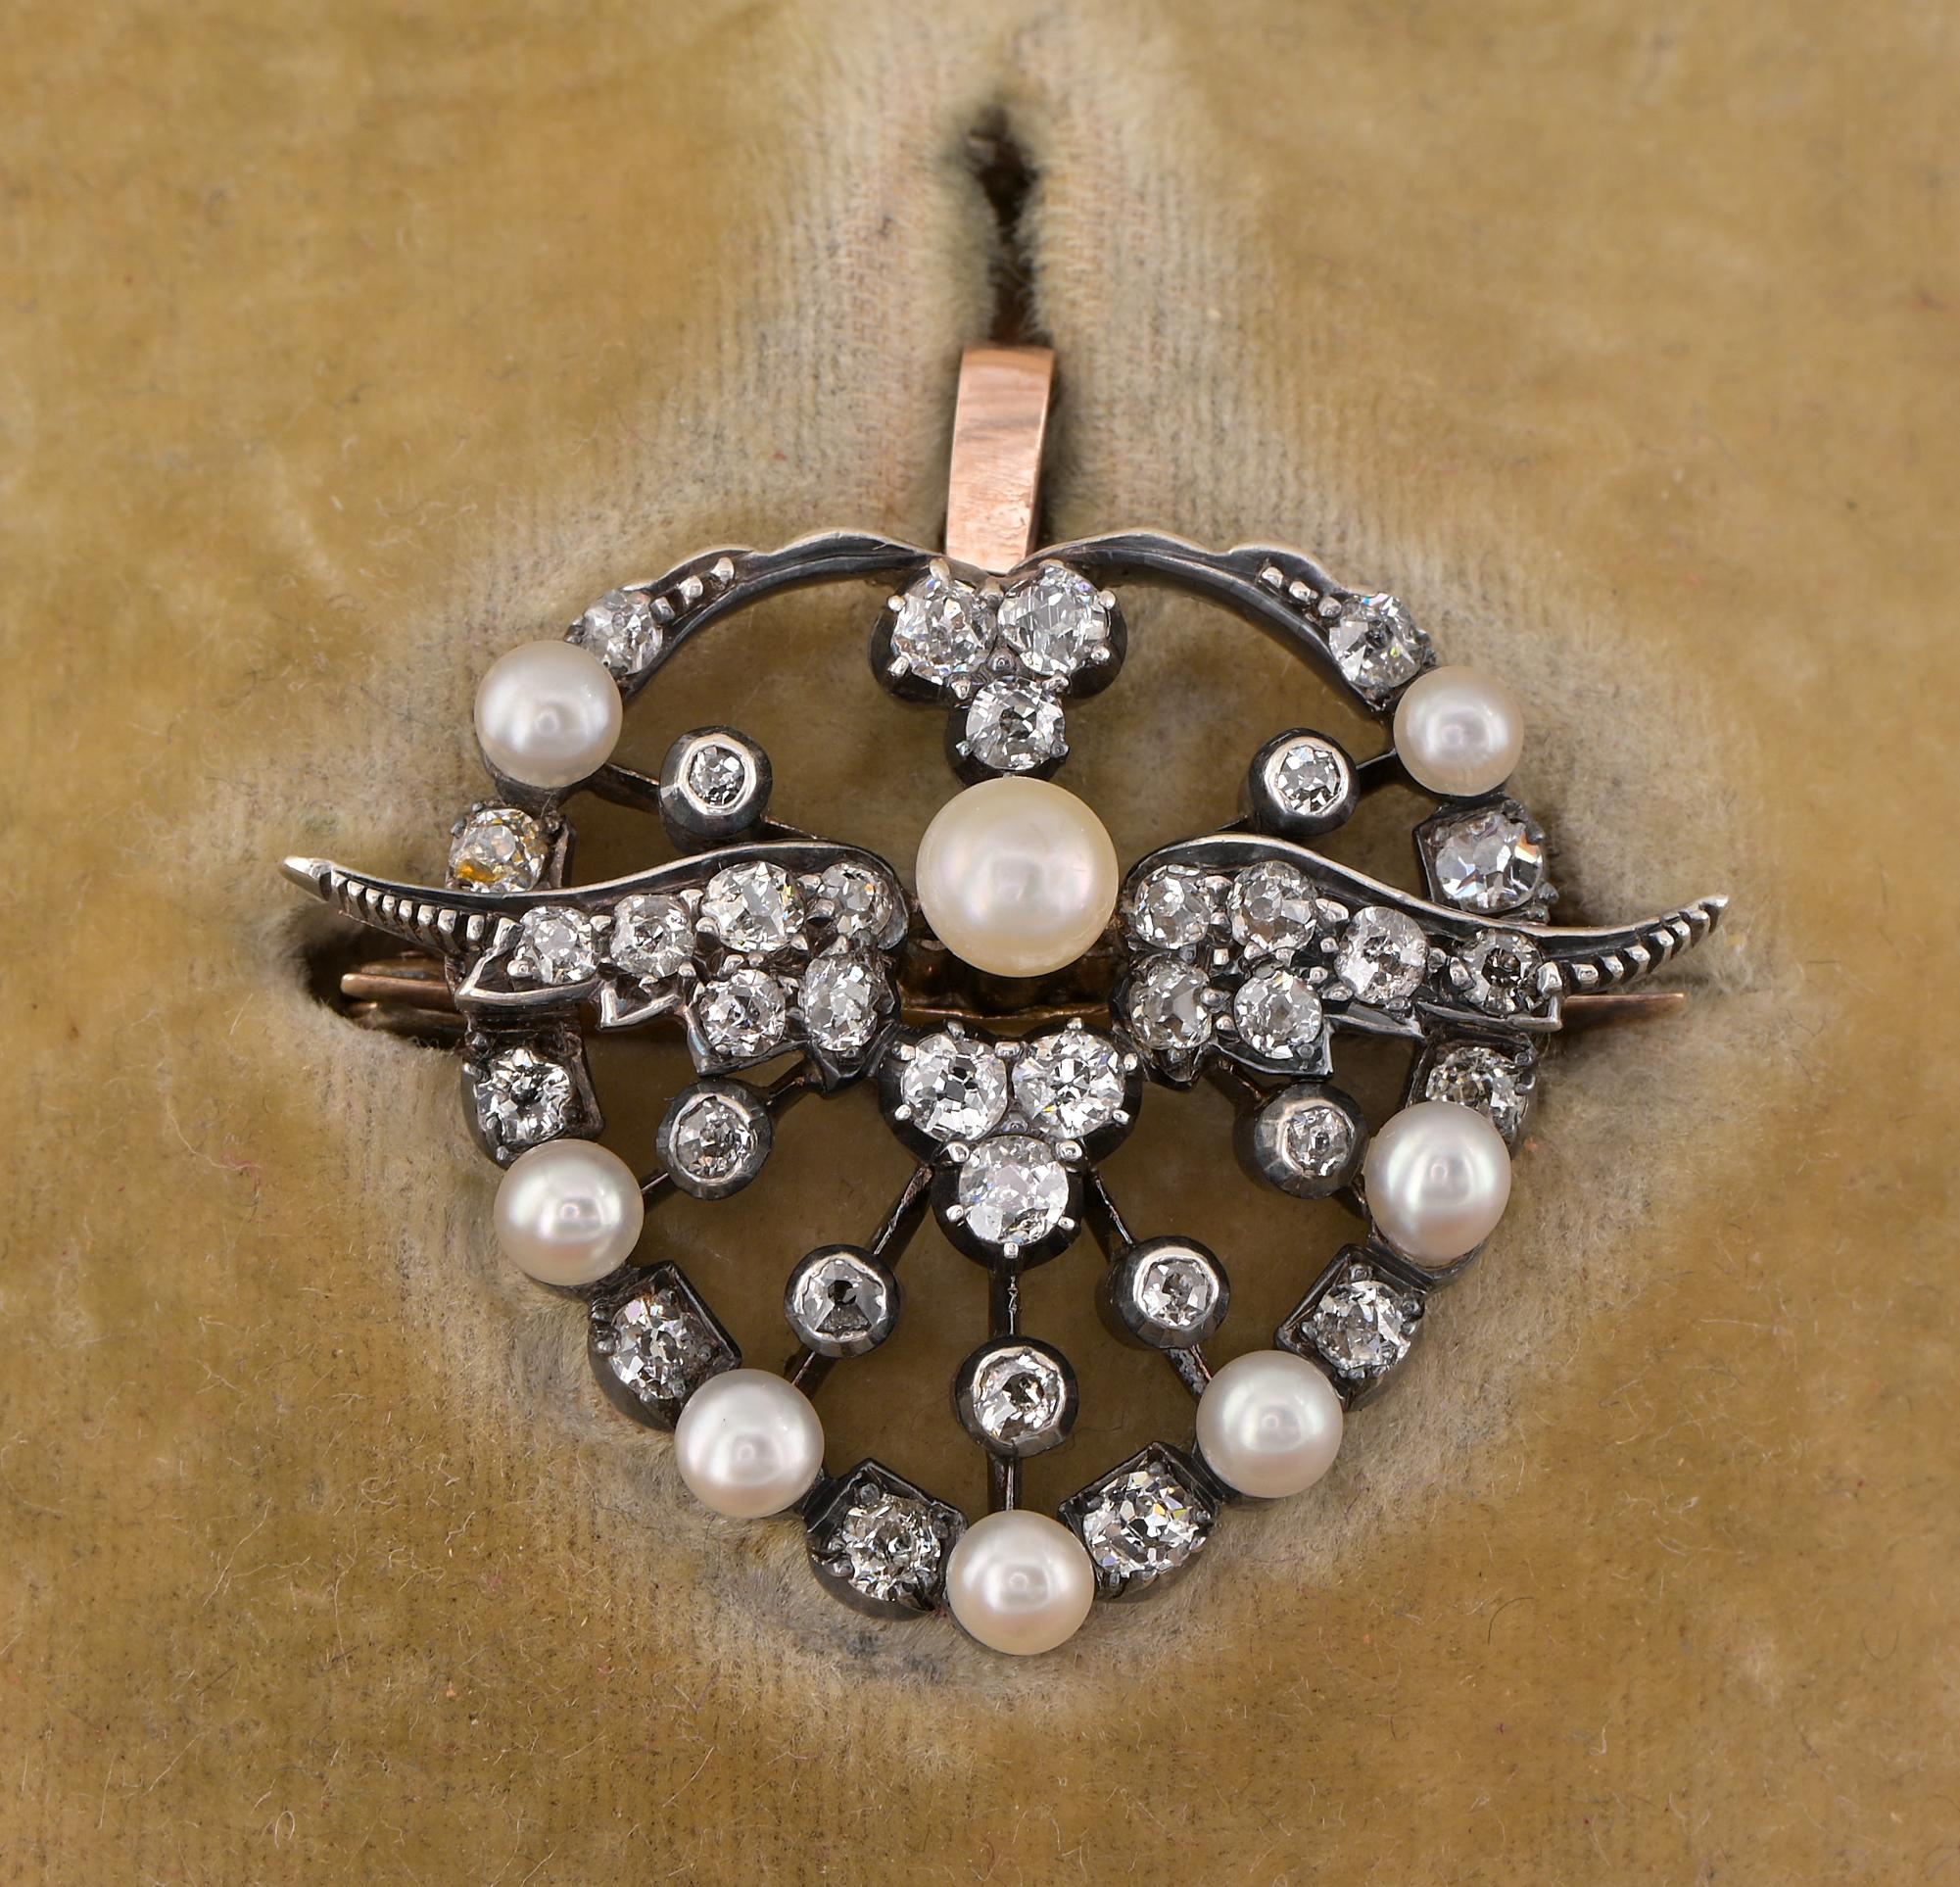 L'amour angélique
Ce remarquable pendentif broche de l'époque victorienne date de 1880 environ.
Exquise fabrication à la main en or massif 15 carats avec une partie en argent.
Symbole de l'amour béni par des ailes angéliques, tel est le thème